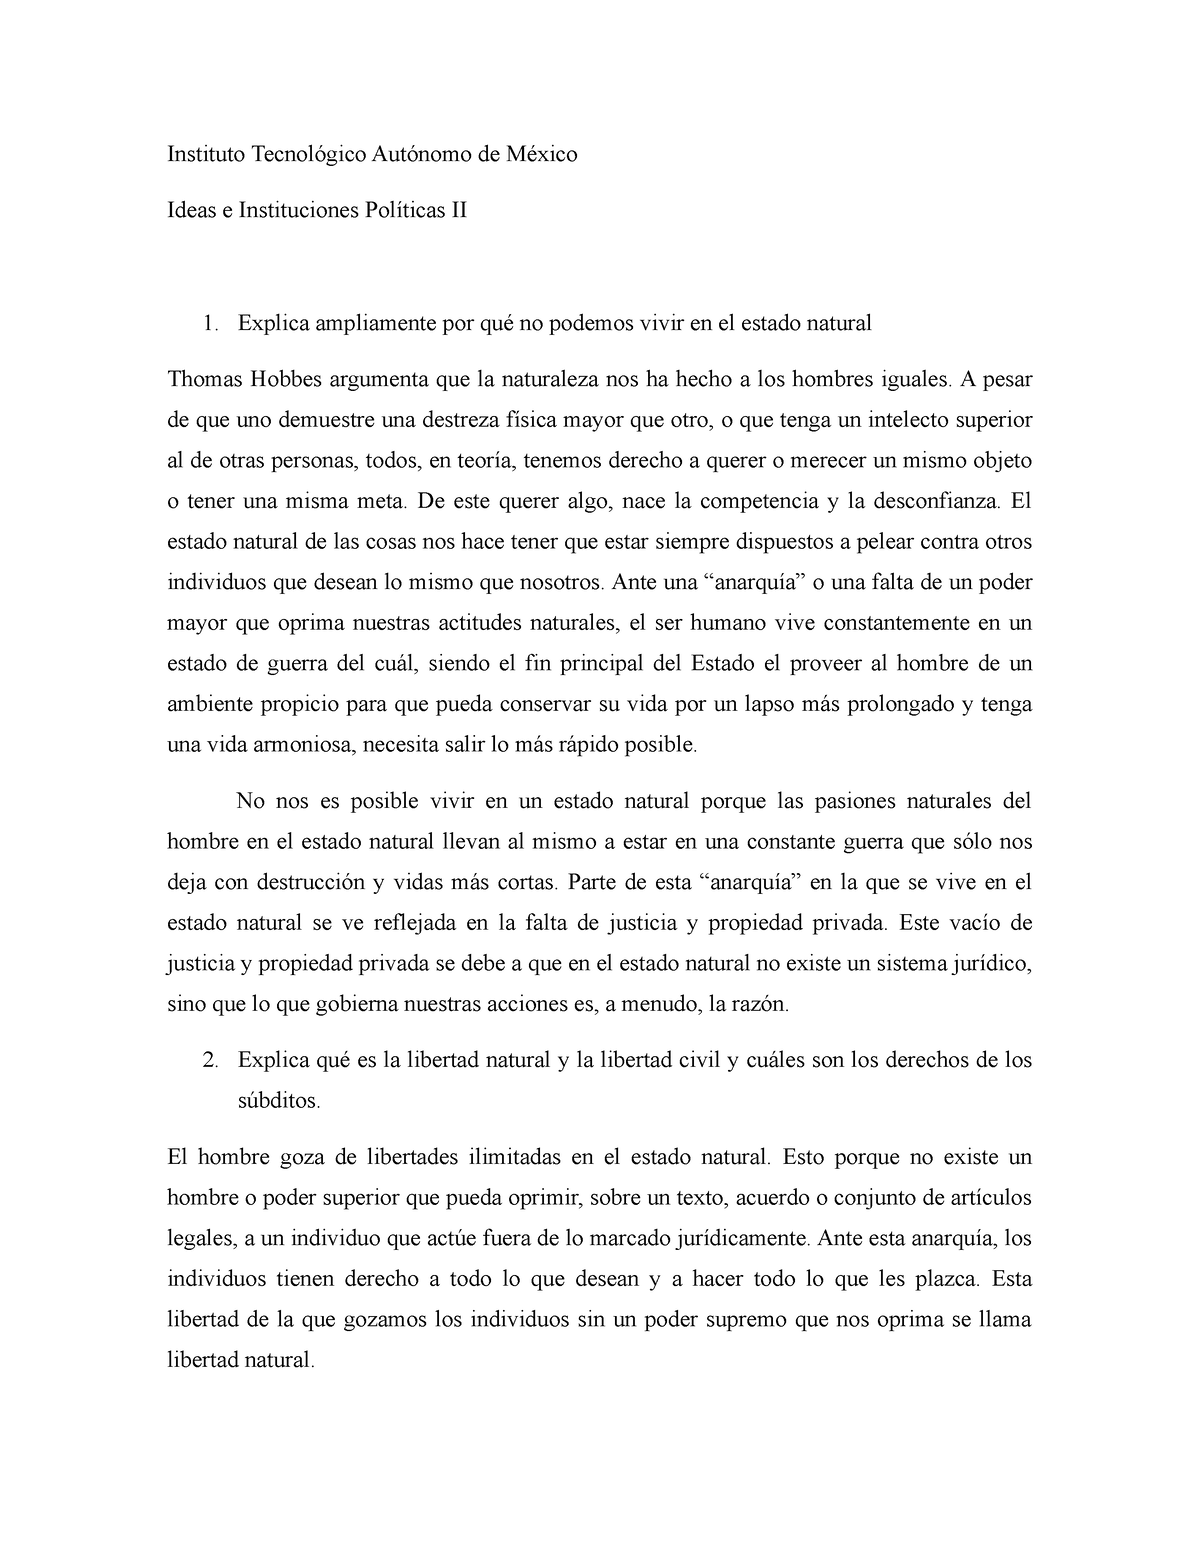 Parcial 2 de Problemas de la Civilización Contemporánea I Villafranca ...